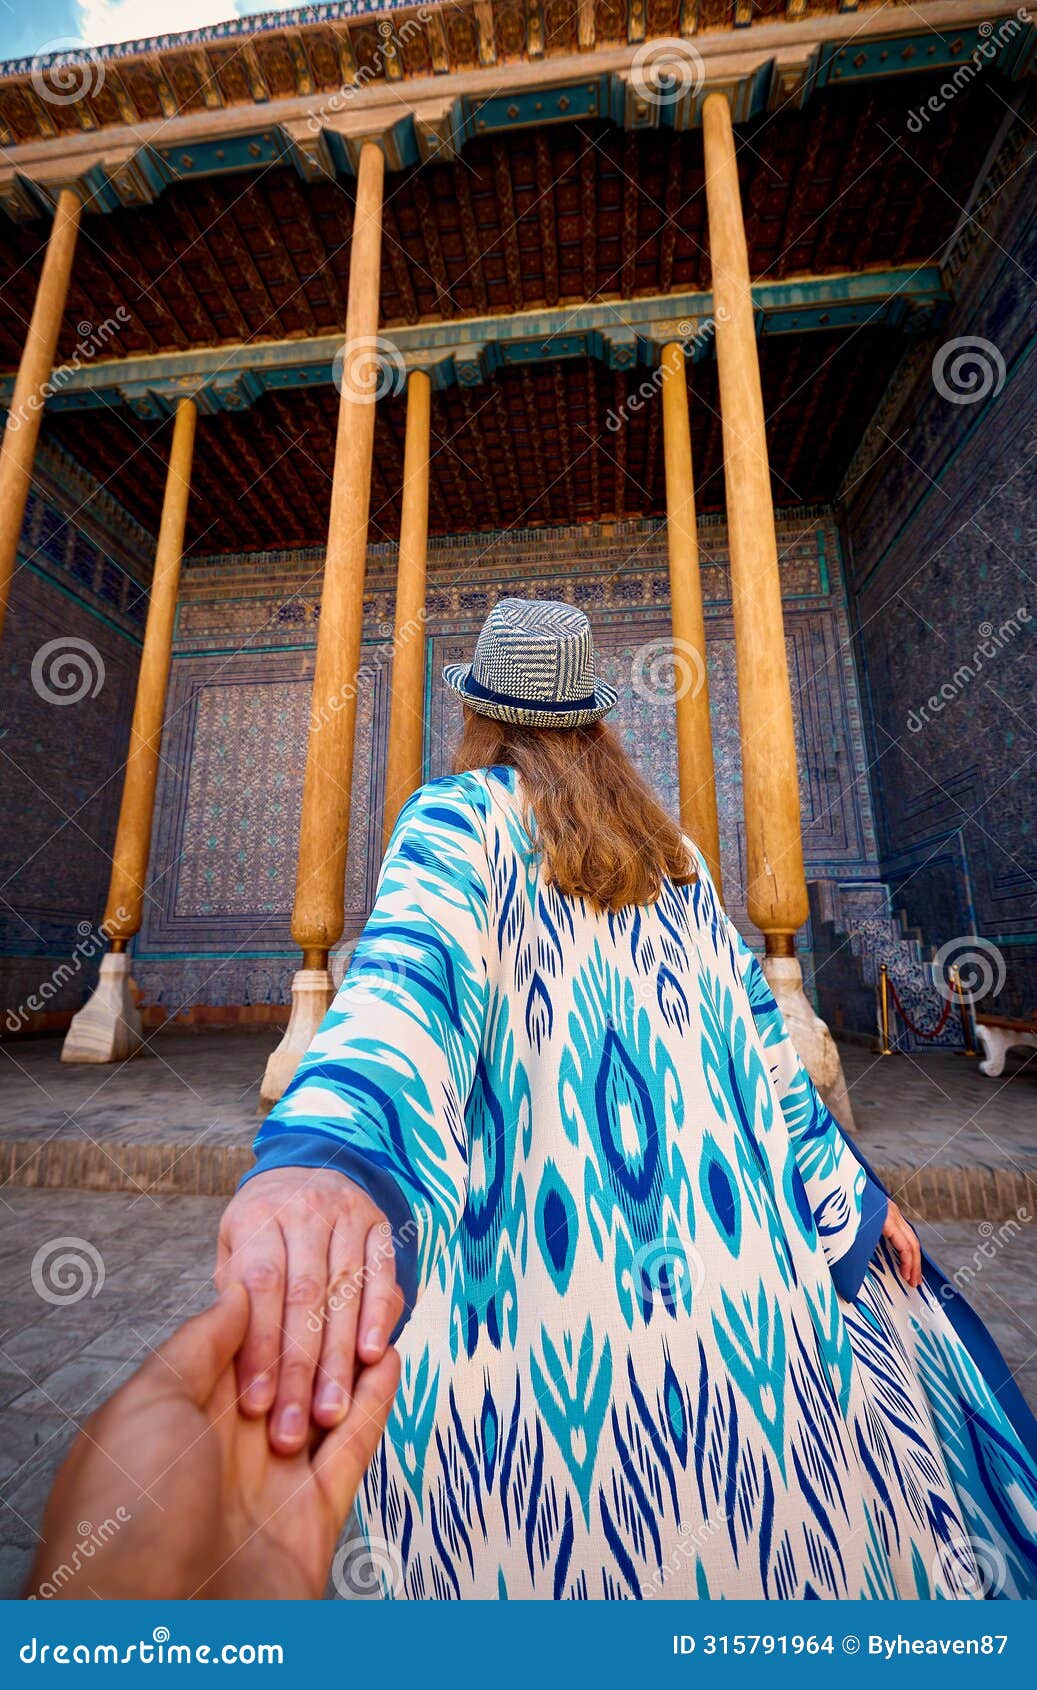 woman tourist at old city khiva in uzbekistan